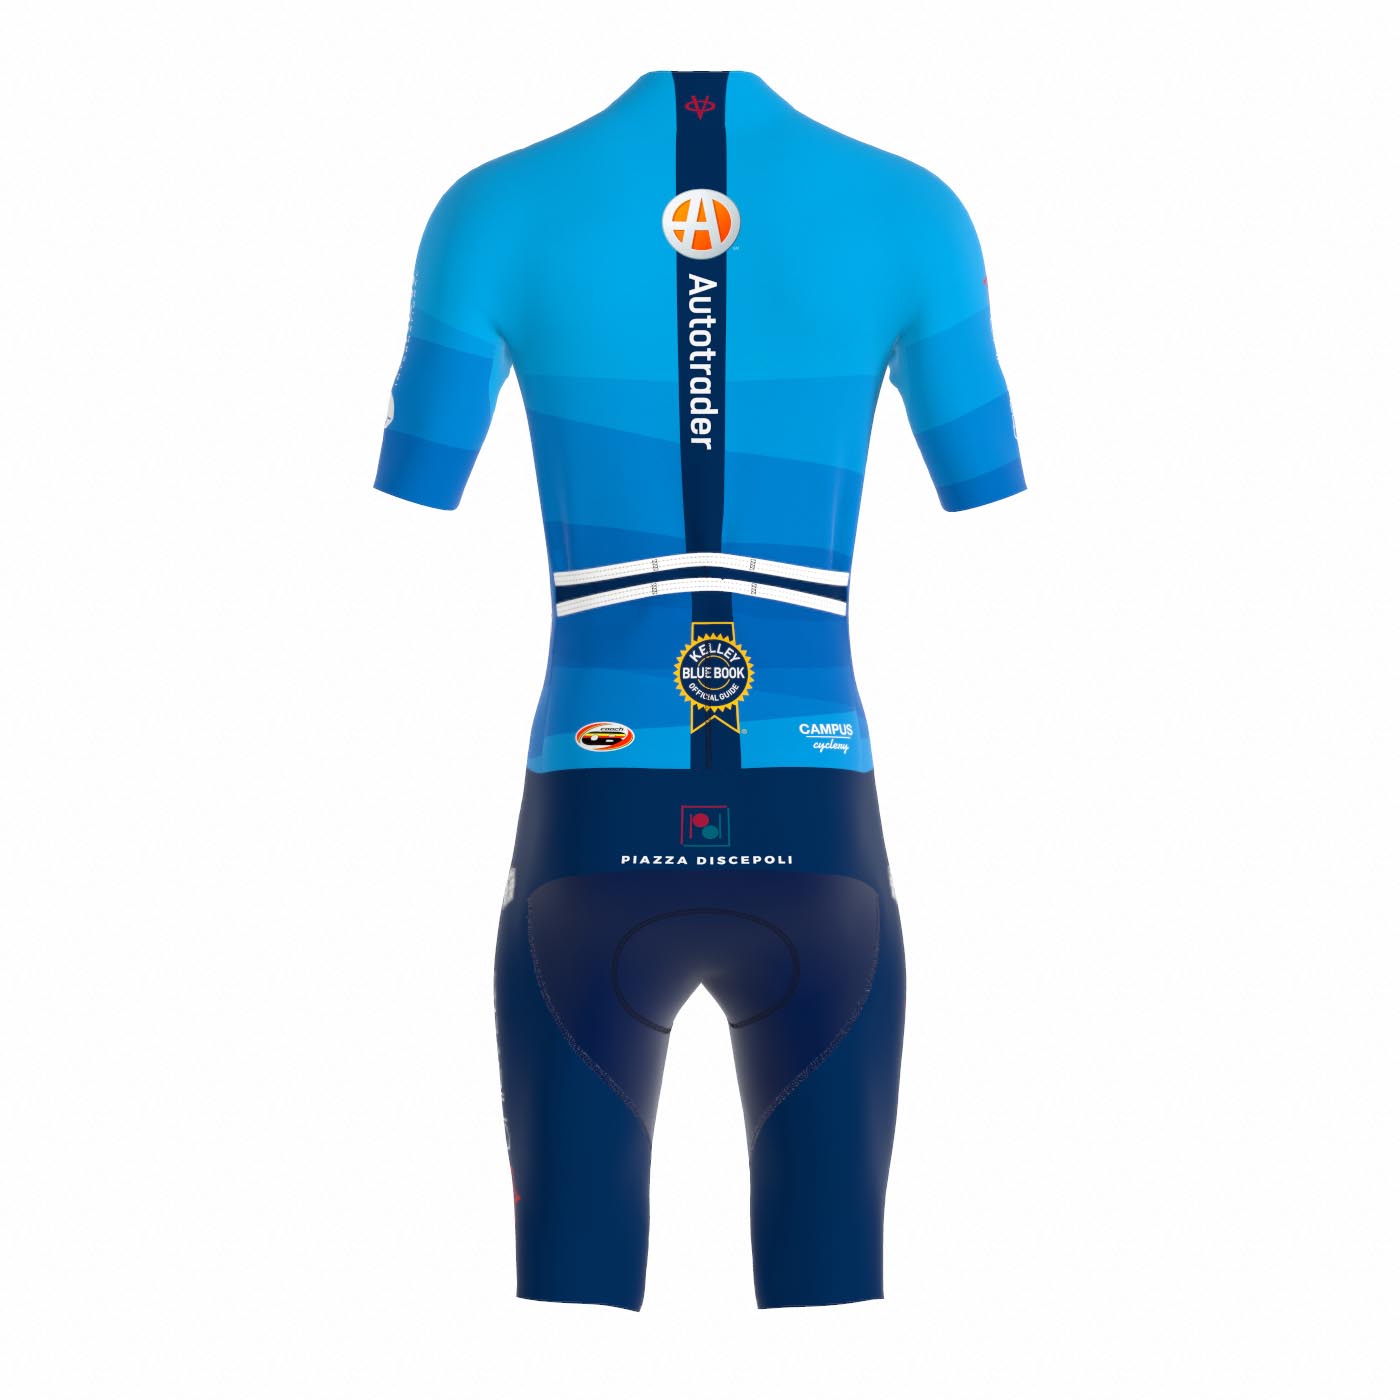 Epic Breeze Road Race Suit - Men (Blue)